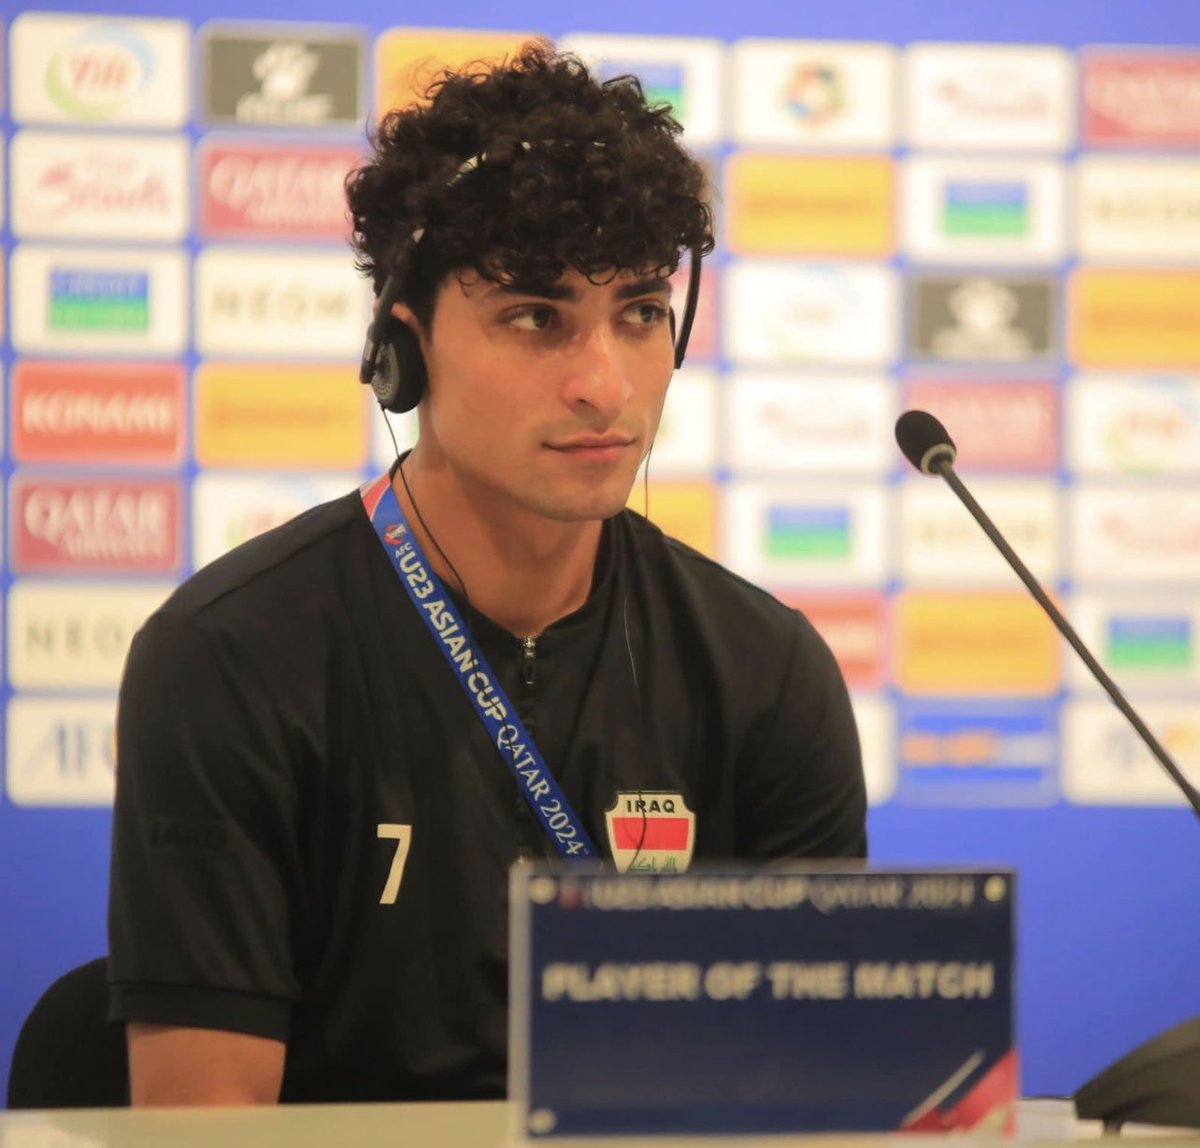 العراقي علي جاسم : 

لم يصل أي شي رسمي من نادي الاتحاد ولكن أتمنى ان اتواجد في الدوري السعودي بكل تأكيد